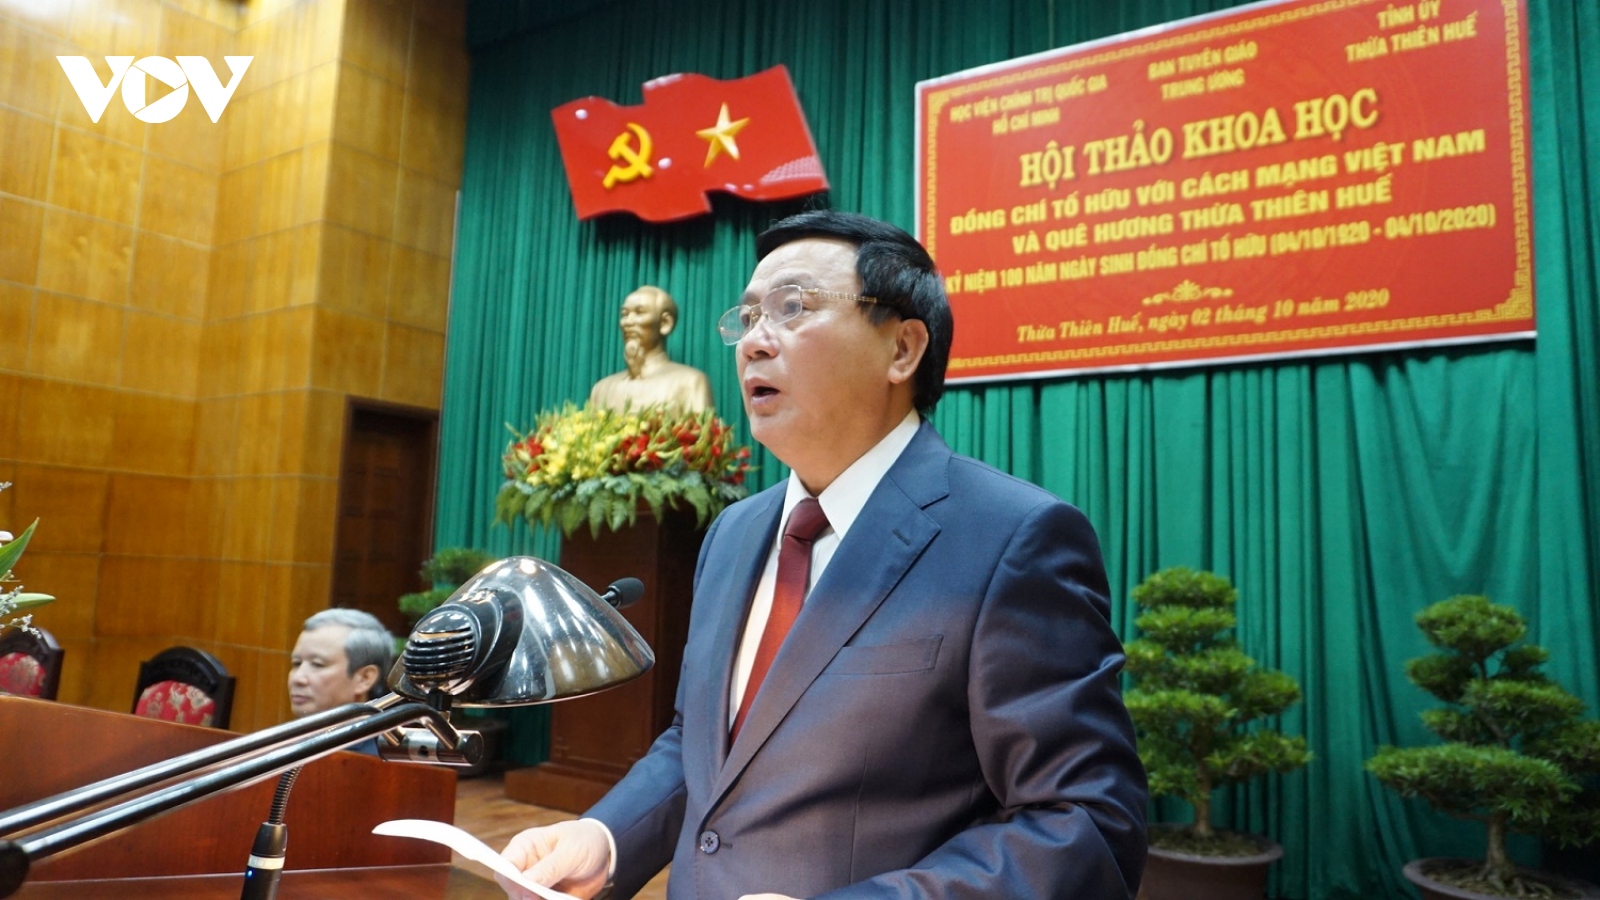 Hội thảo Khoa học Tố Hữu với Cách mạng Việt Nam và quê hương Thừa Thiên Huế